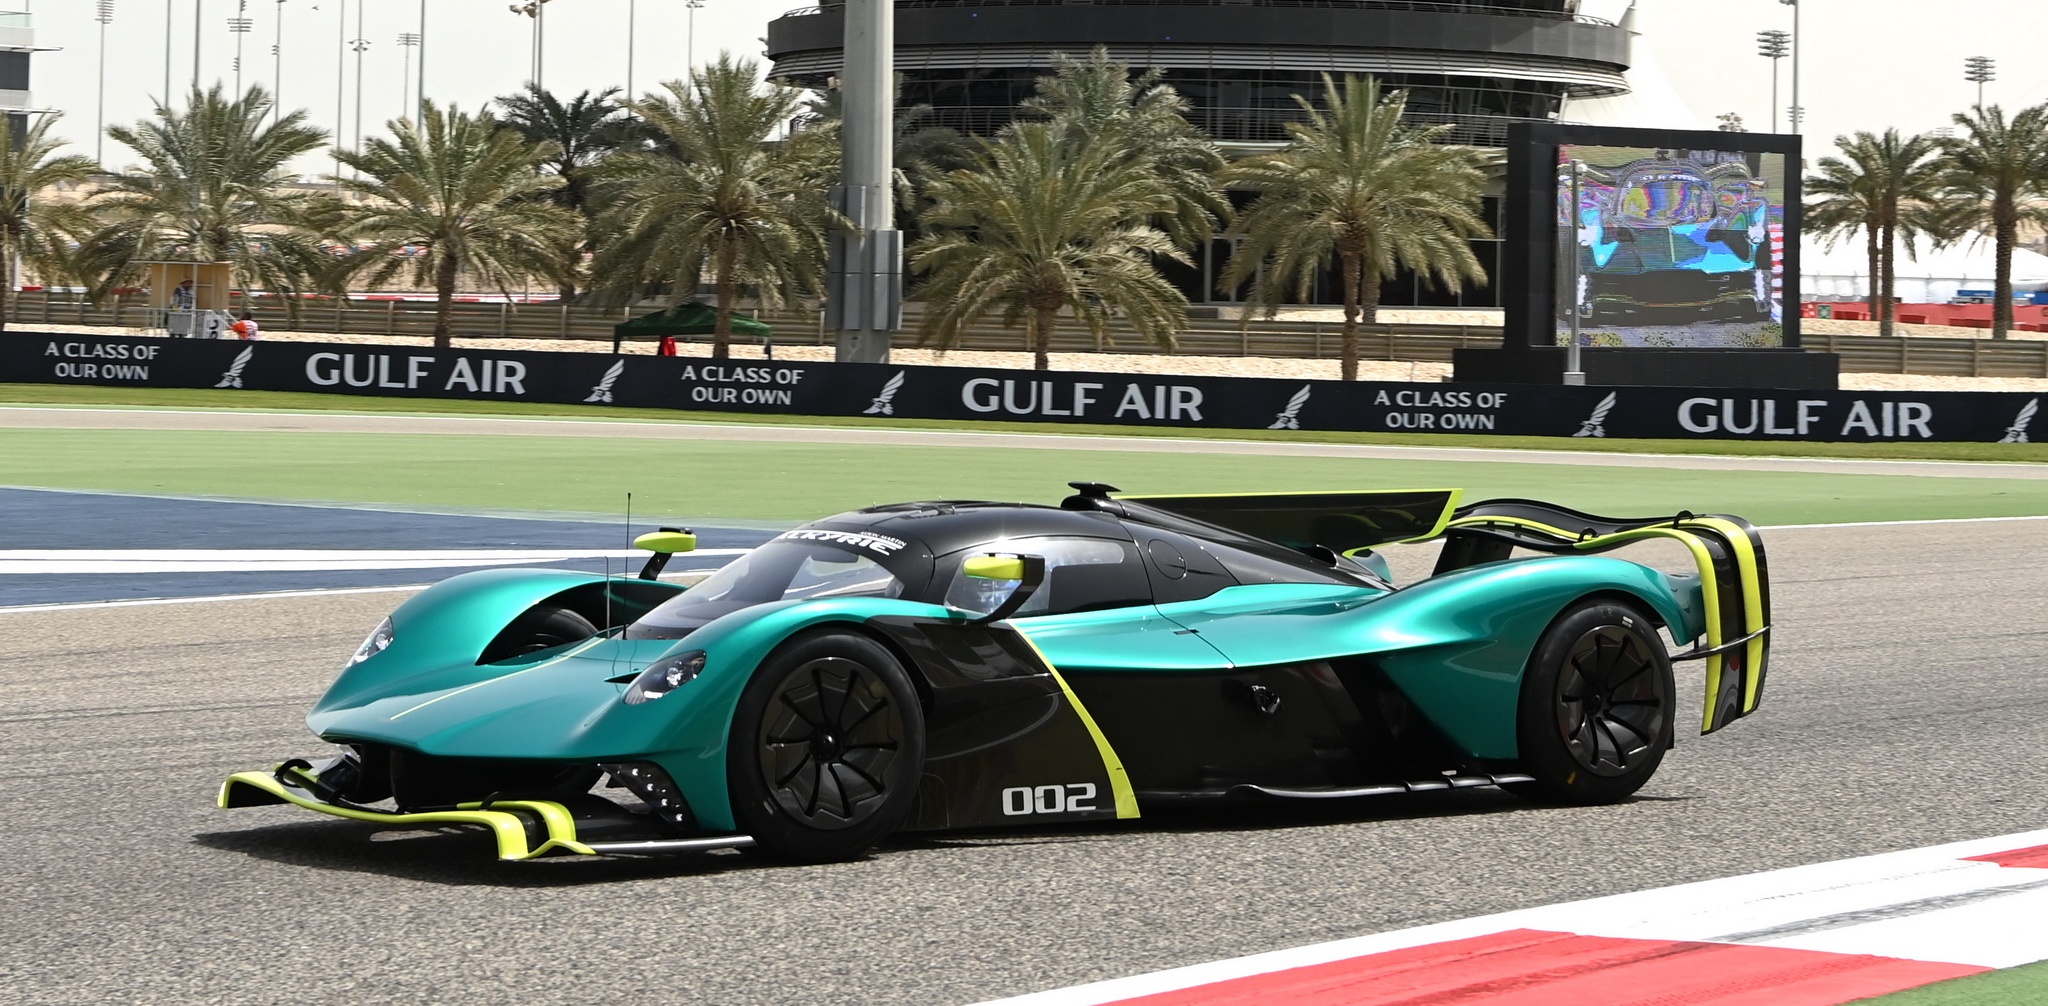 มาชม Aston Martin Valkyrie AMR PRO ซัดโหด!! ในสนามแข่ง Gulf Air Bahrain Grand Prix